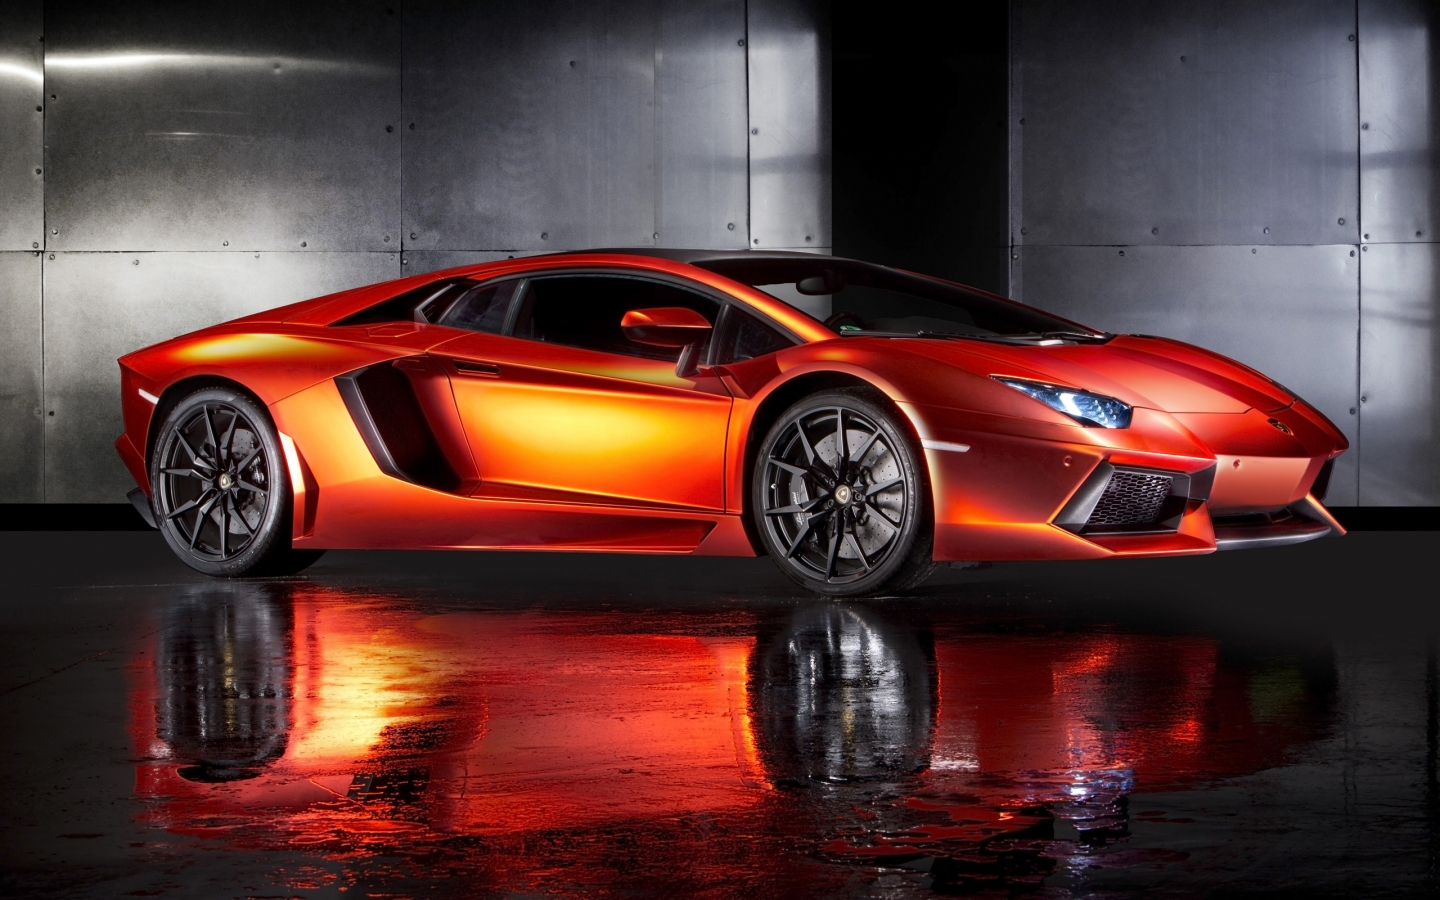 Orange Lamborghini Aventador for 1440 x 900 widescreen resolution